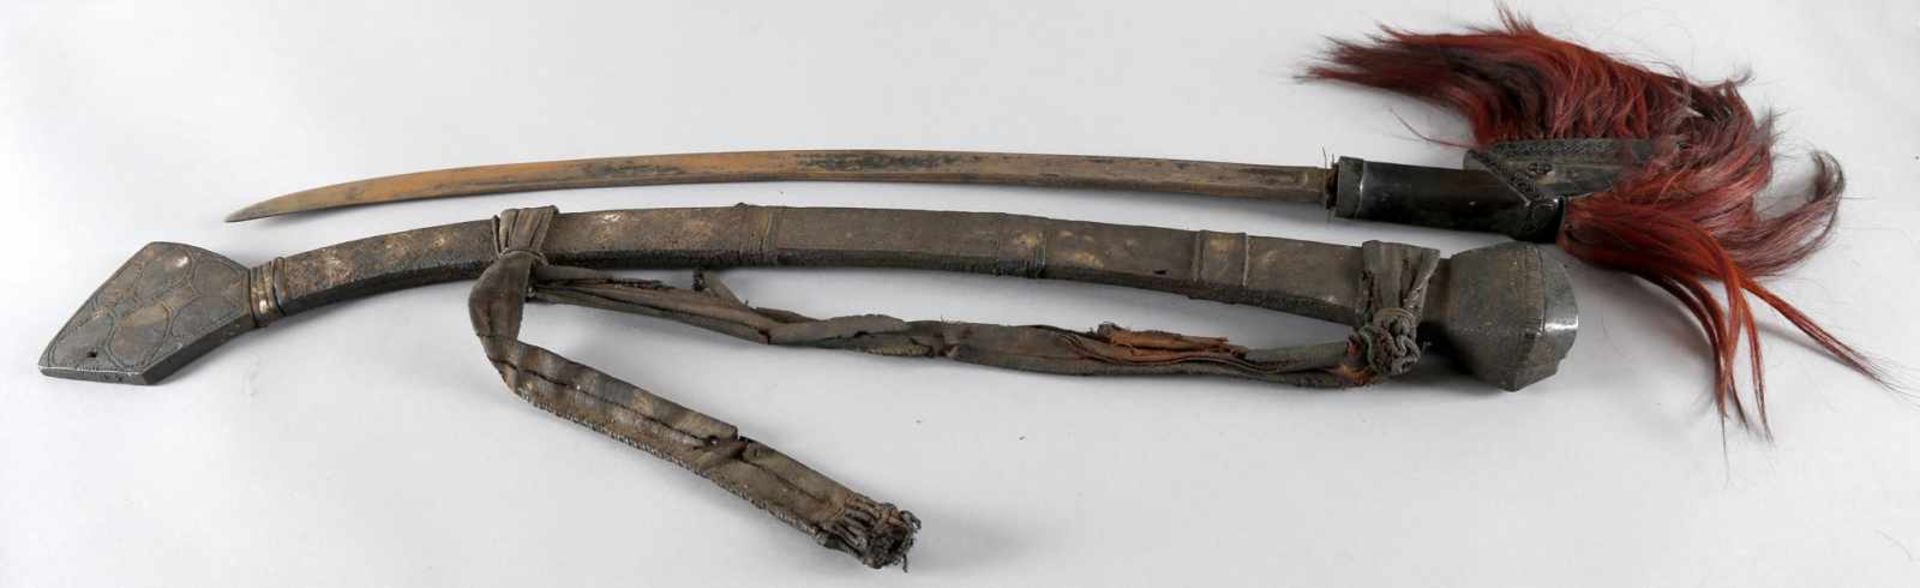 Dayak-Schwert in Original-Scheide, 19. Jh., Borneoeinschneidige, leicht geschwungene, beidseitig